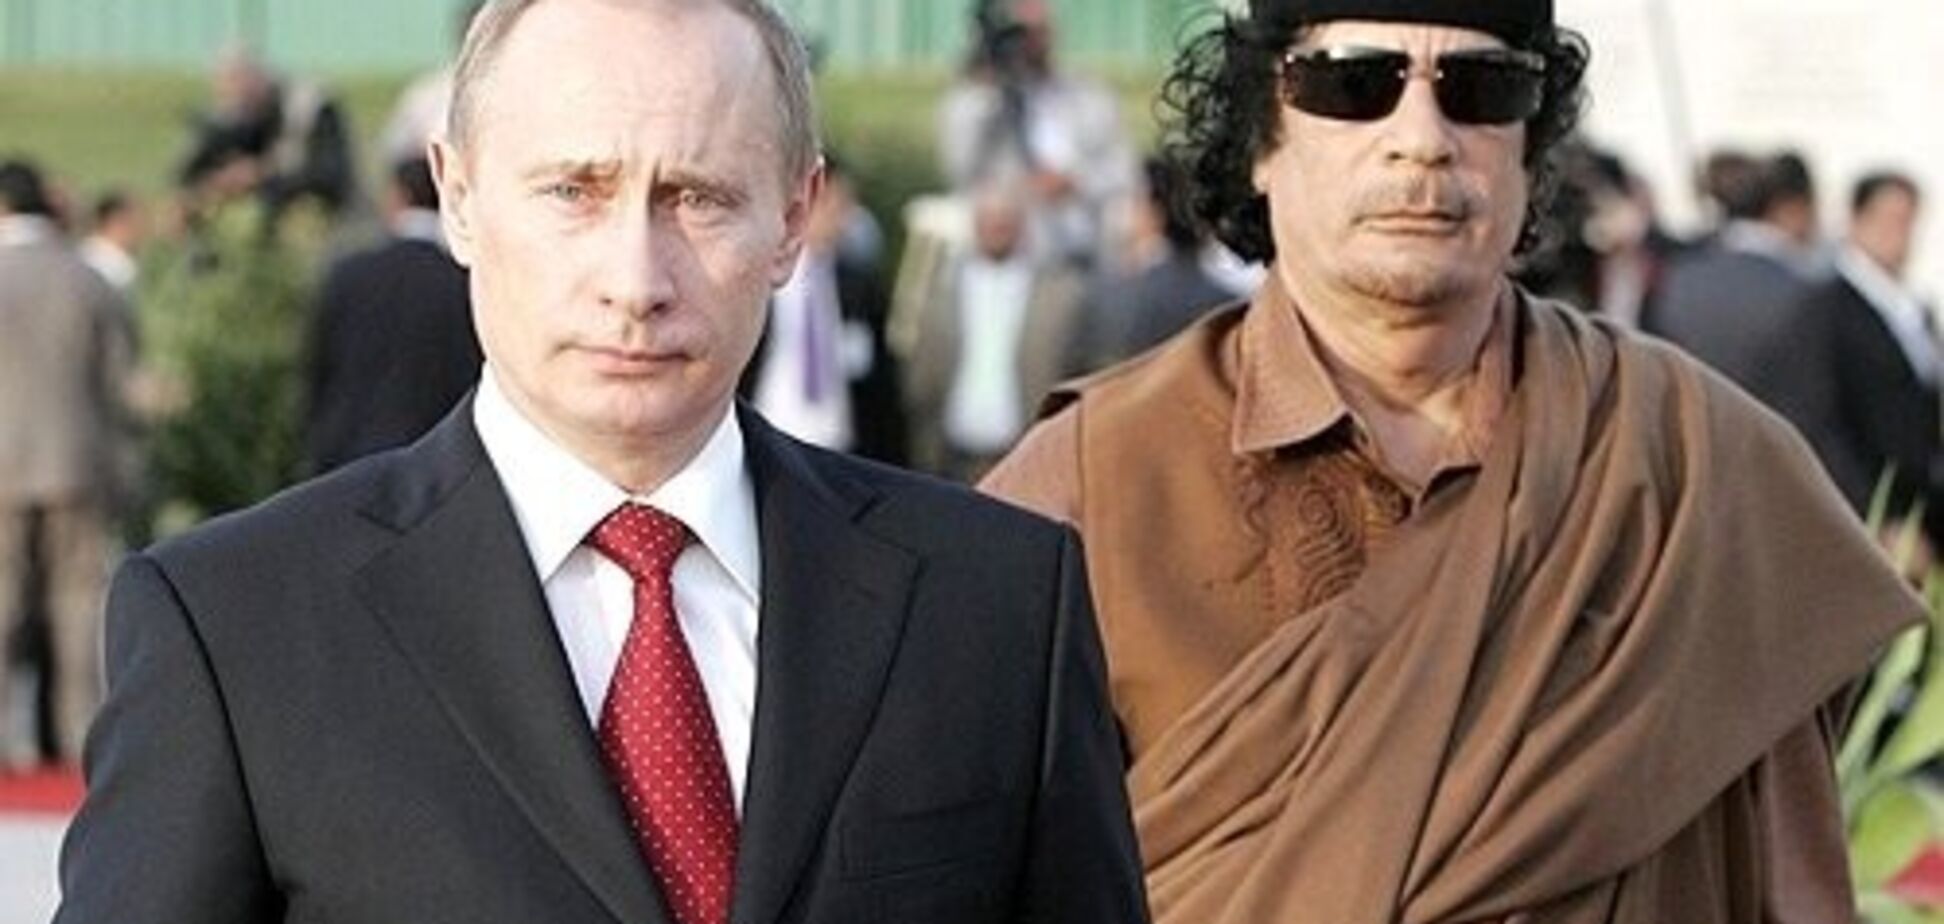 Путин начал движение в направлении Каддафи